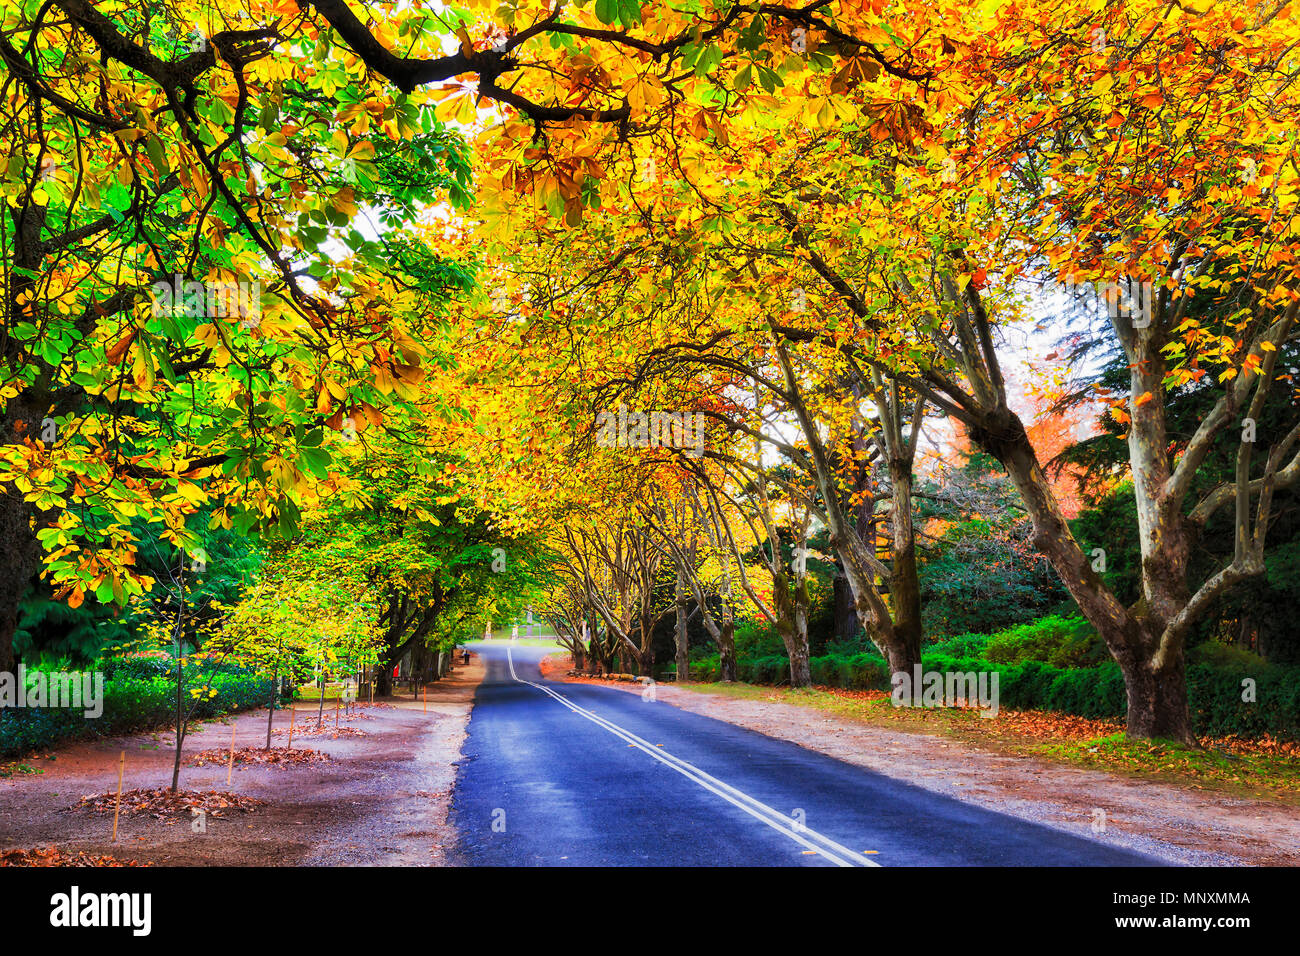 Brillantes hojas de color naranja amarillo cálido cubriendo el asfalto Church road en la ciudad de Monte Wilson de Blue Mountains australianas durante la alta temporada de otoño. Foto de stock